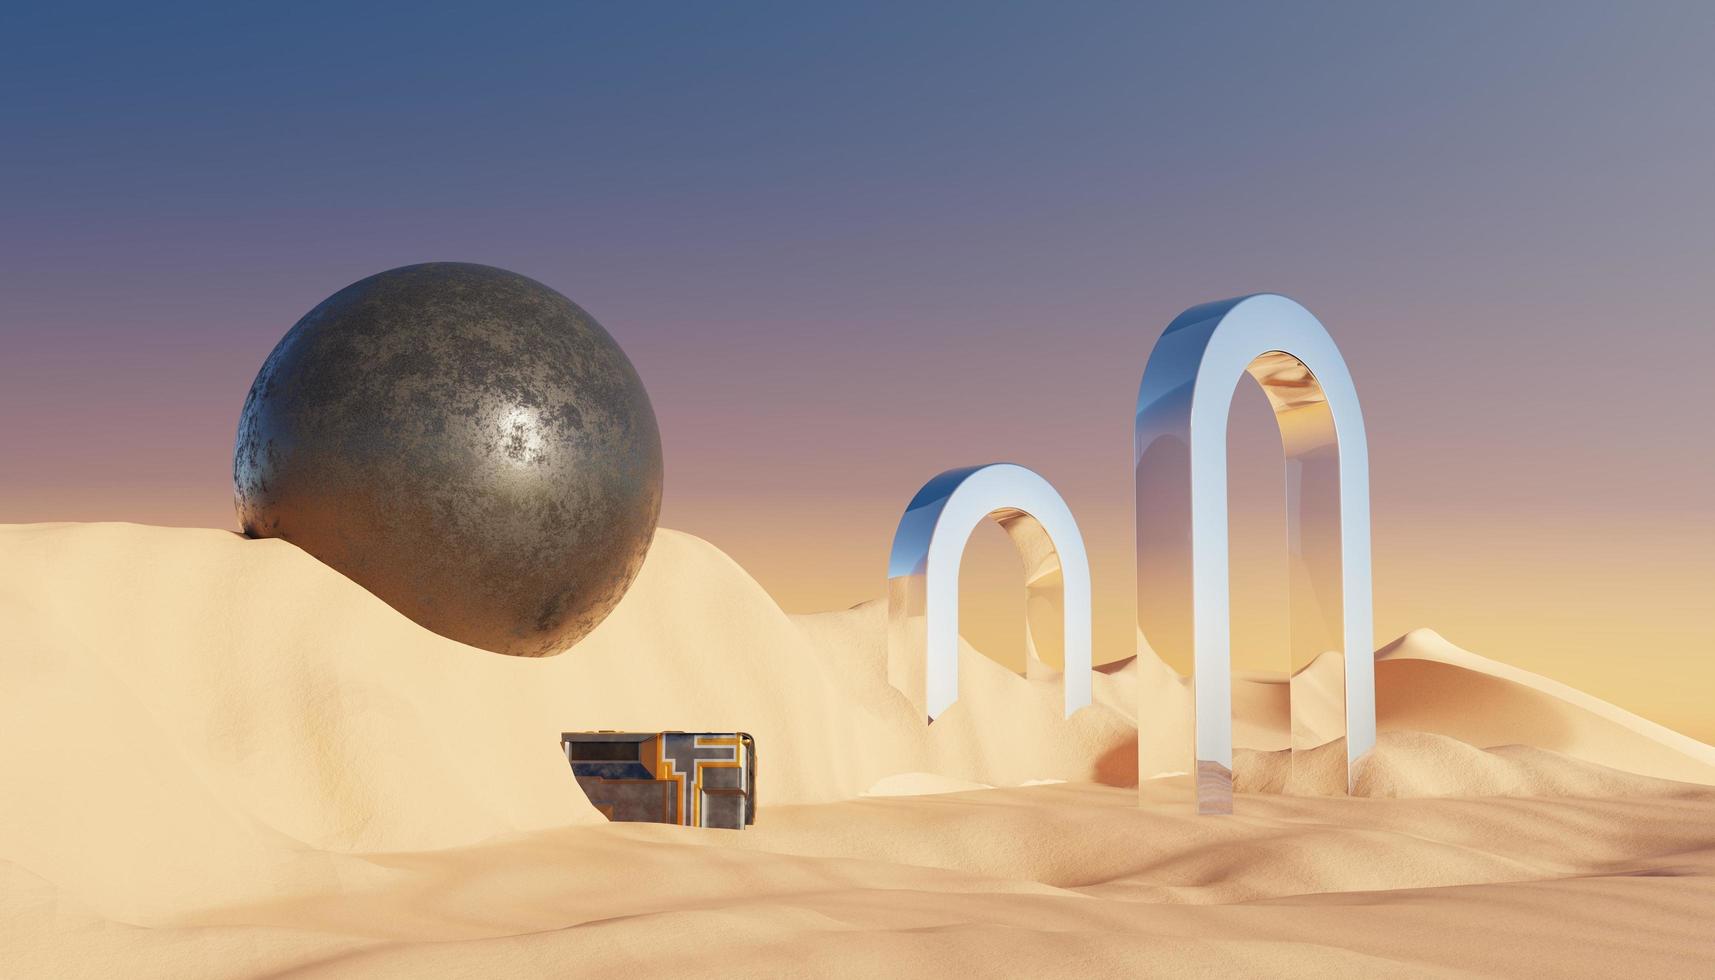 arena de acantilado de dunas abstractas con plataforma de soporte de podio metálico. fondo de paisaje natural del desierto surrealista. escena del desierto con diseño geométrico de arcos metálicos brillantes. procesamiento 3d foto